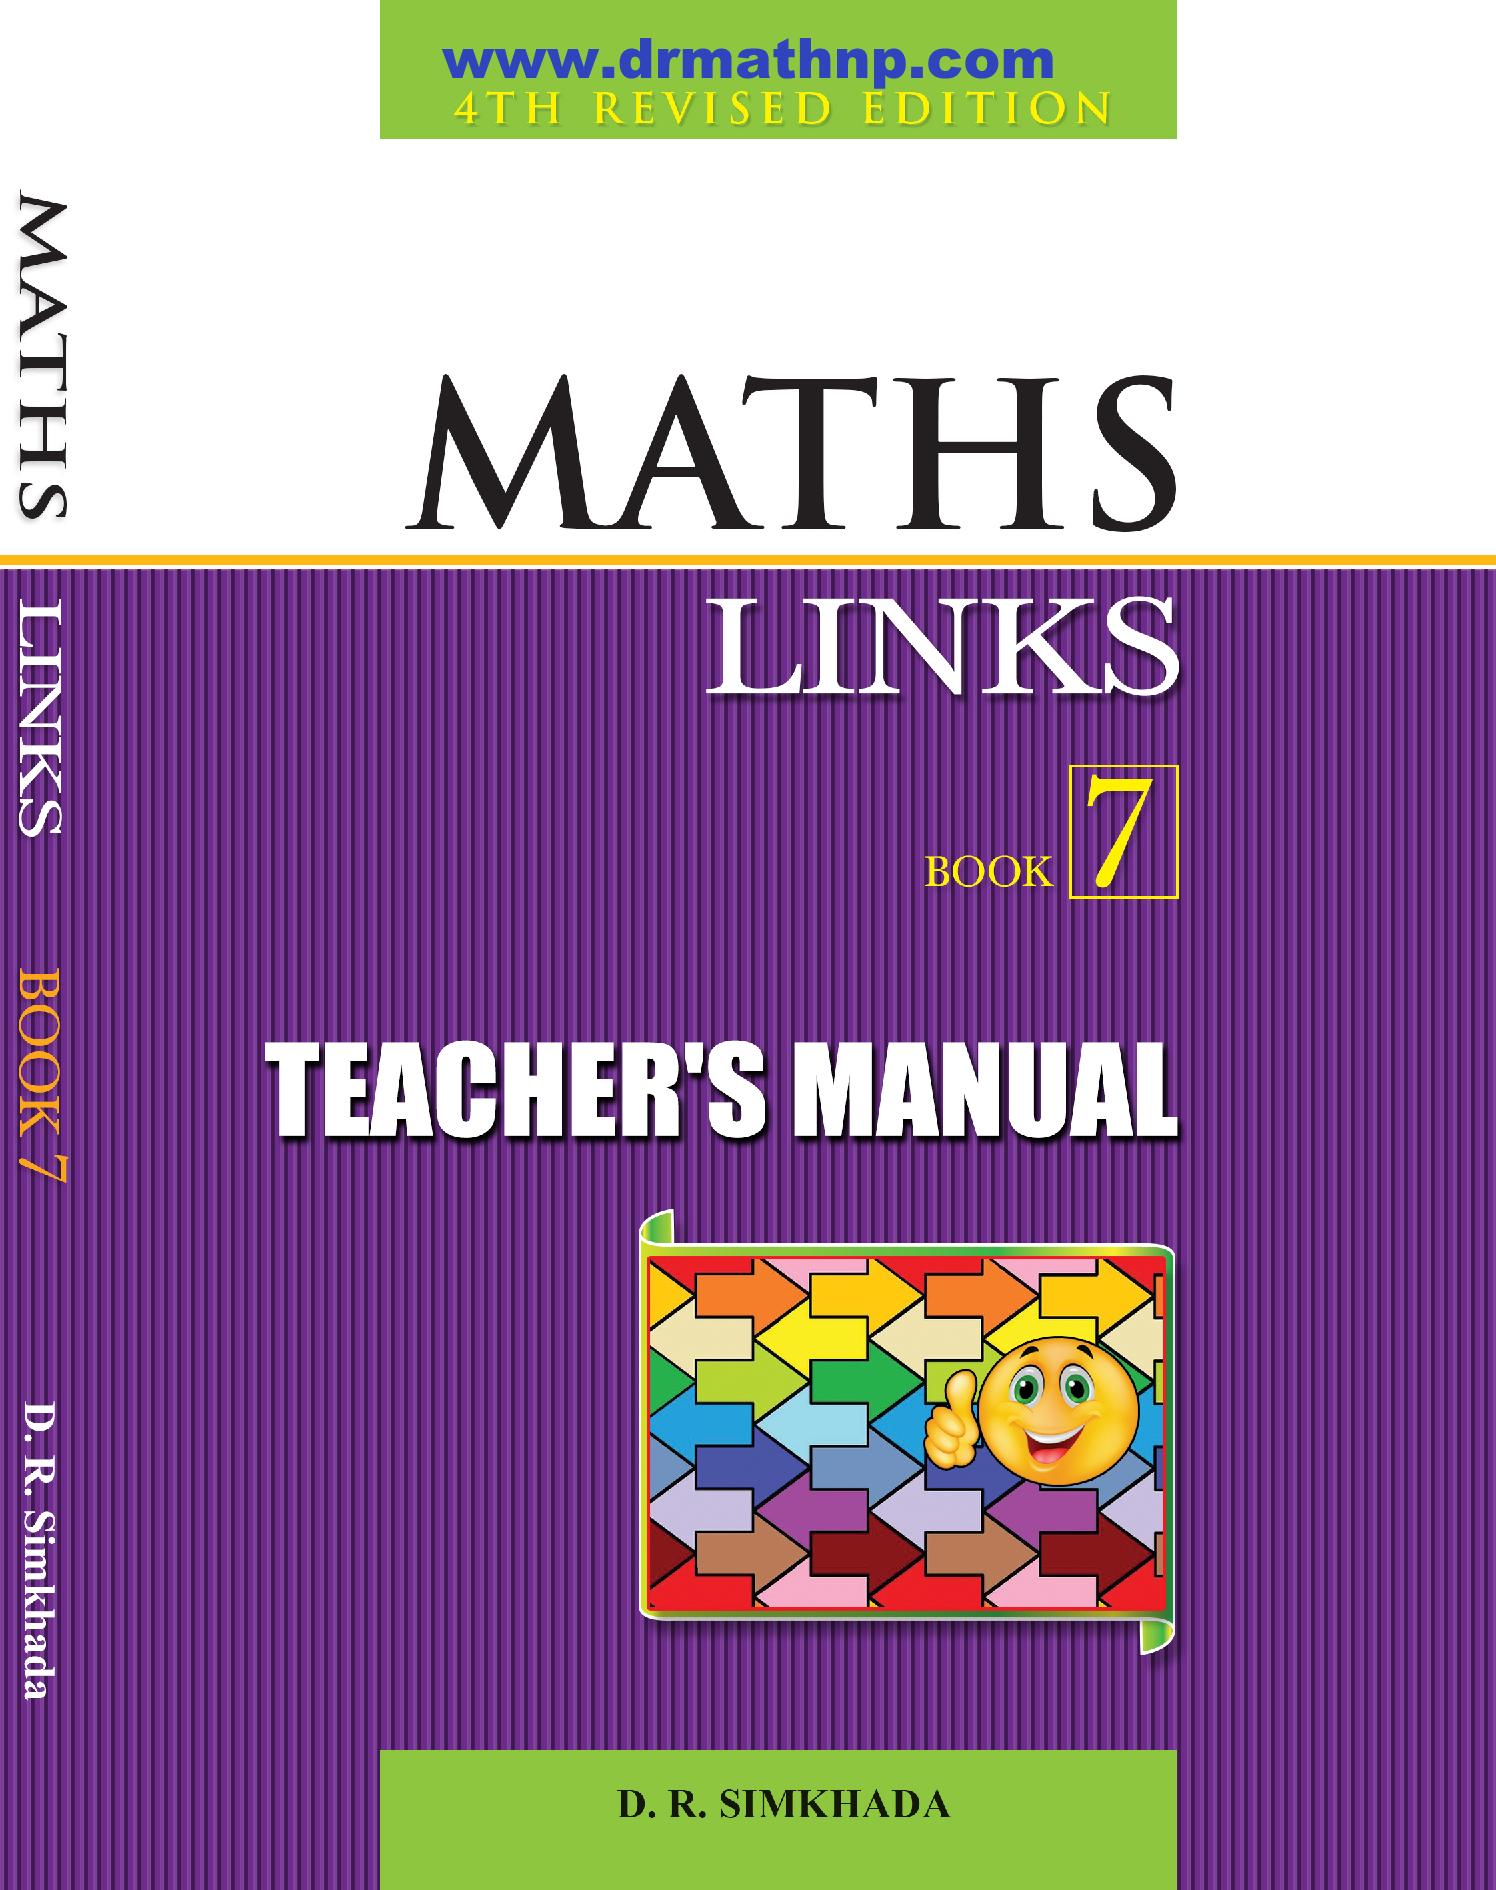 Teacher’s Manual Maths Links 7